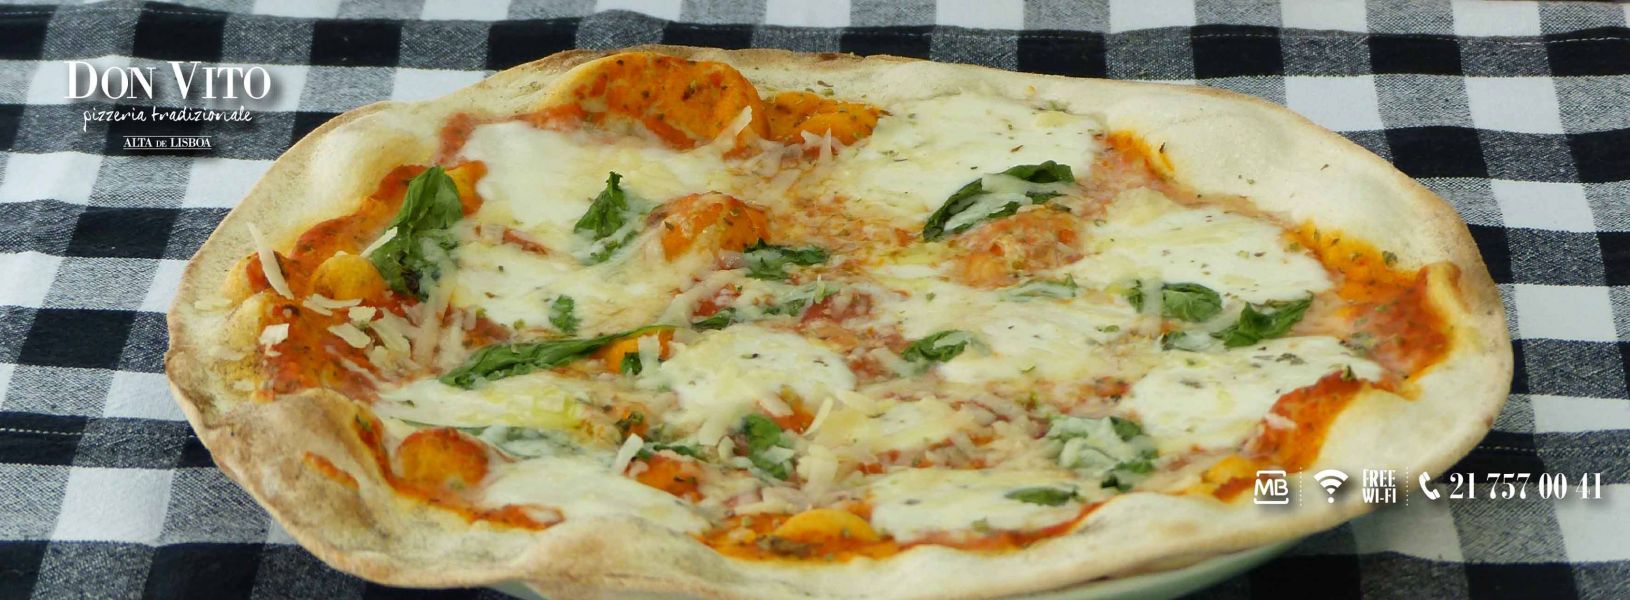 Don Vito pizzeria tradizionale - Benfica